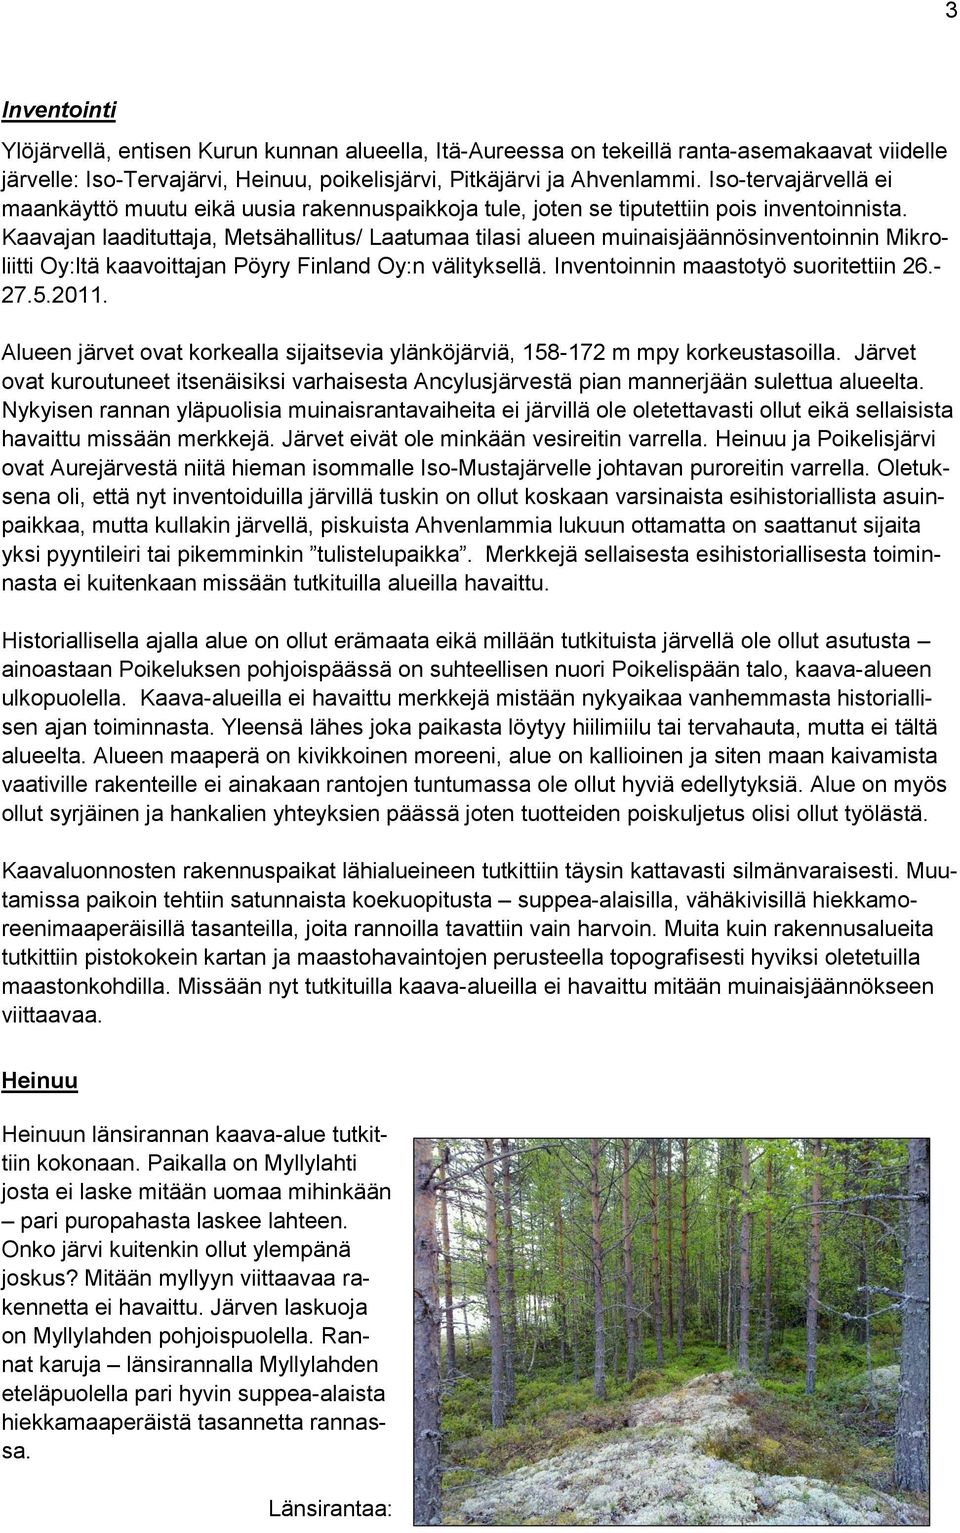 Kaavajan laadituttaja, Metsähallitus/ Laatumaa tilasi alueen muinaisjäännösinventoinnin Mikroliitti Oy:ltä kaavoittajan Pöyry Finland Oy:n välityksellä. Inventoinnin maastotyö suoritettiin 26.- 27.5.